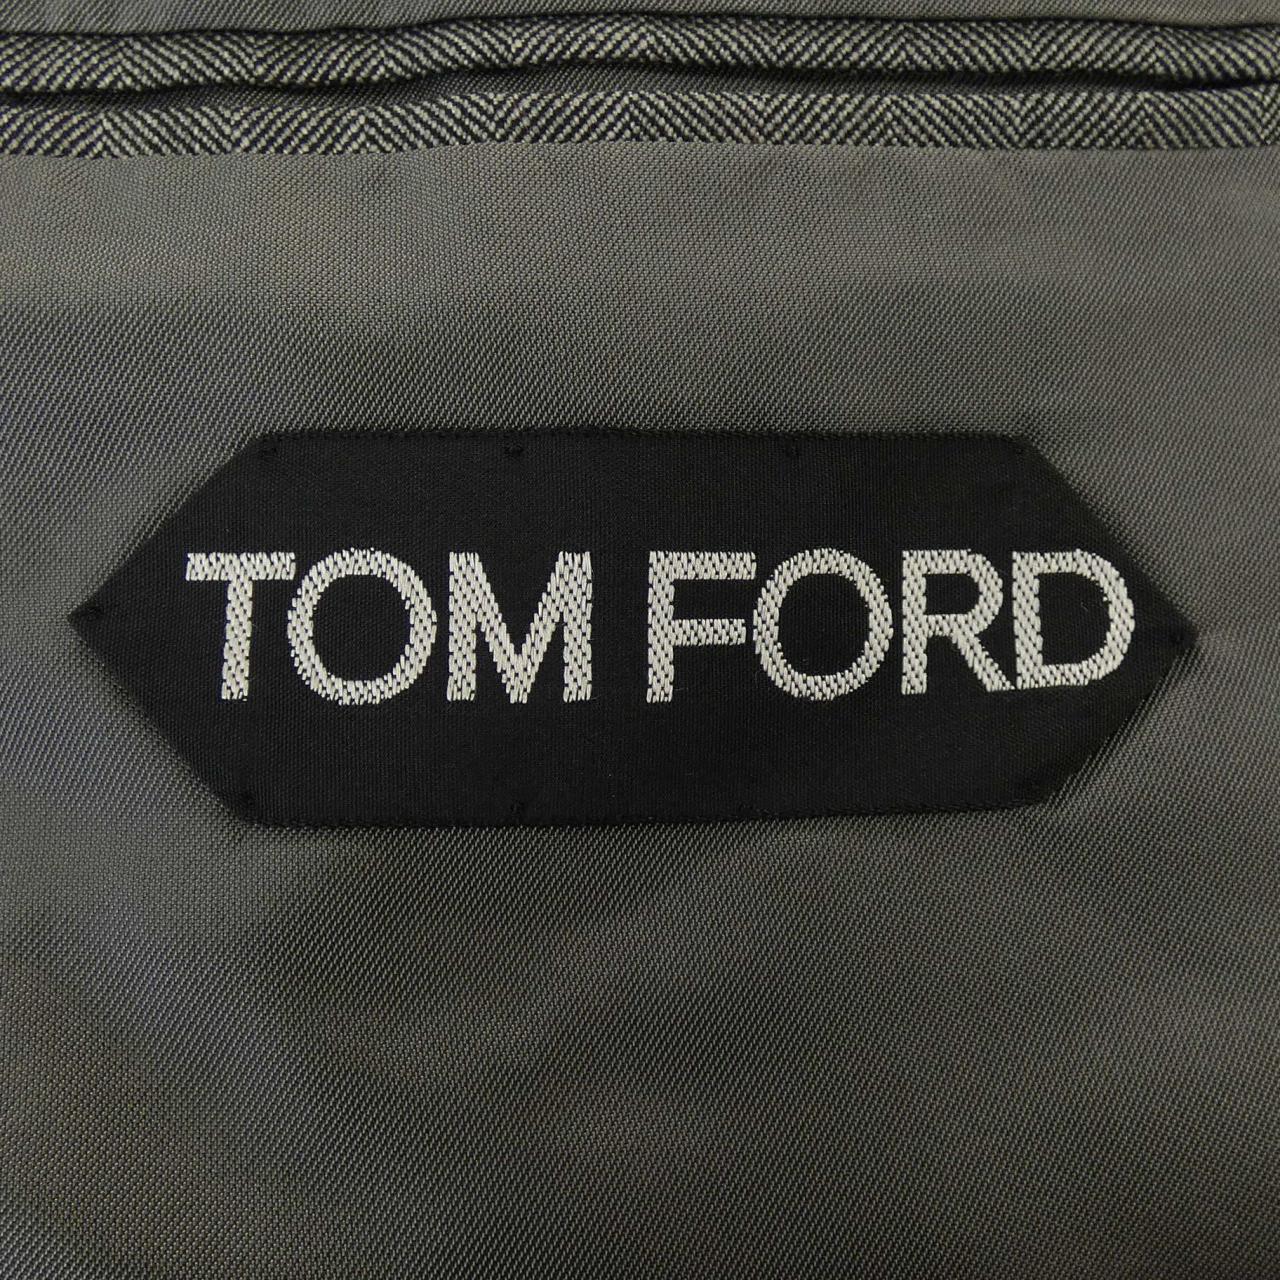 TOM FORD湯姆福特套裝